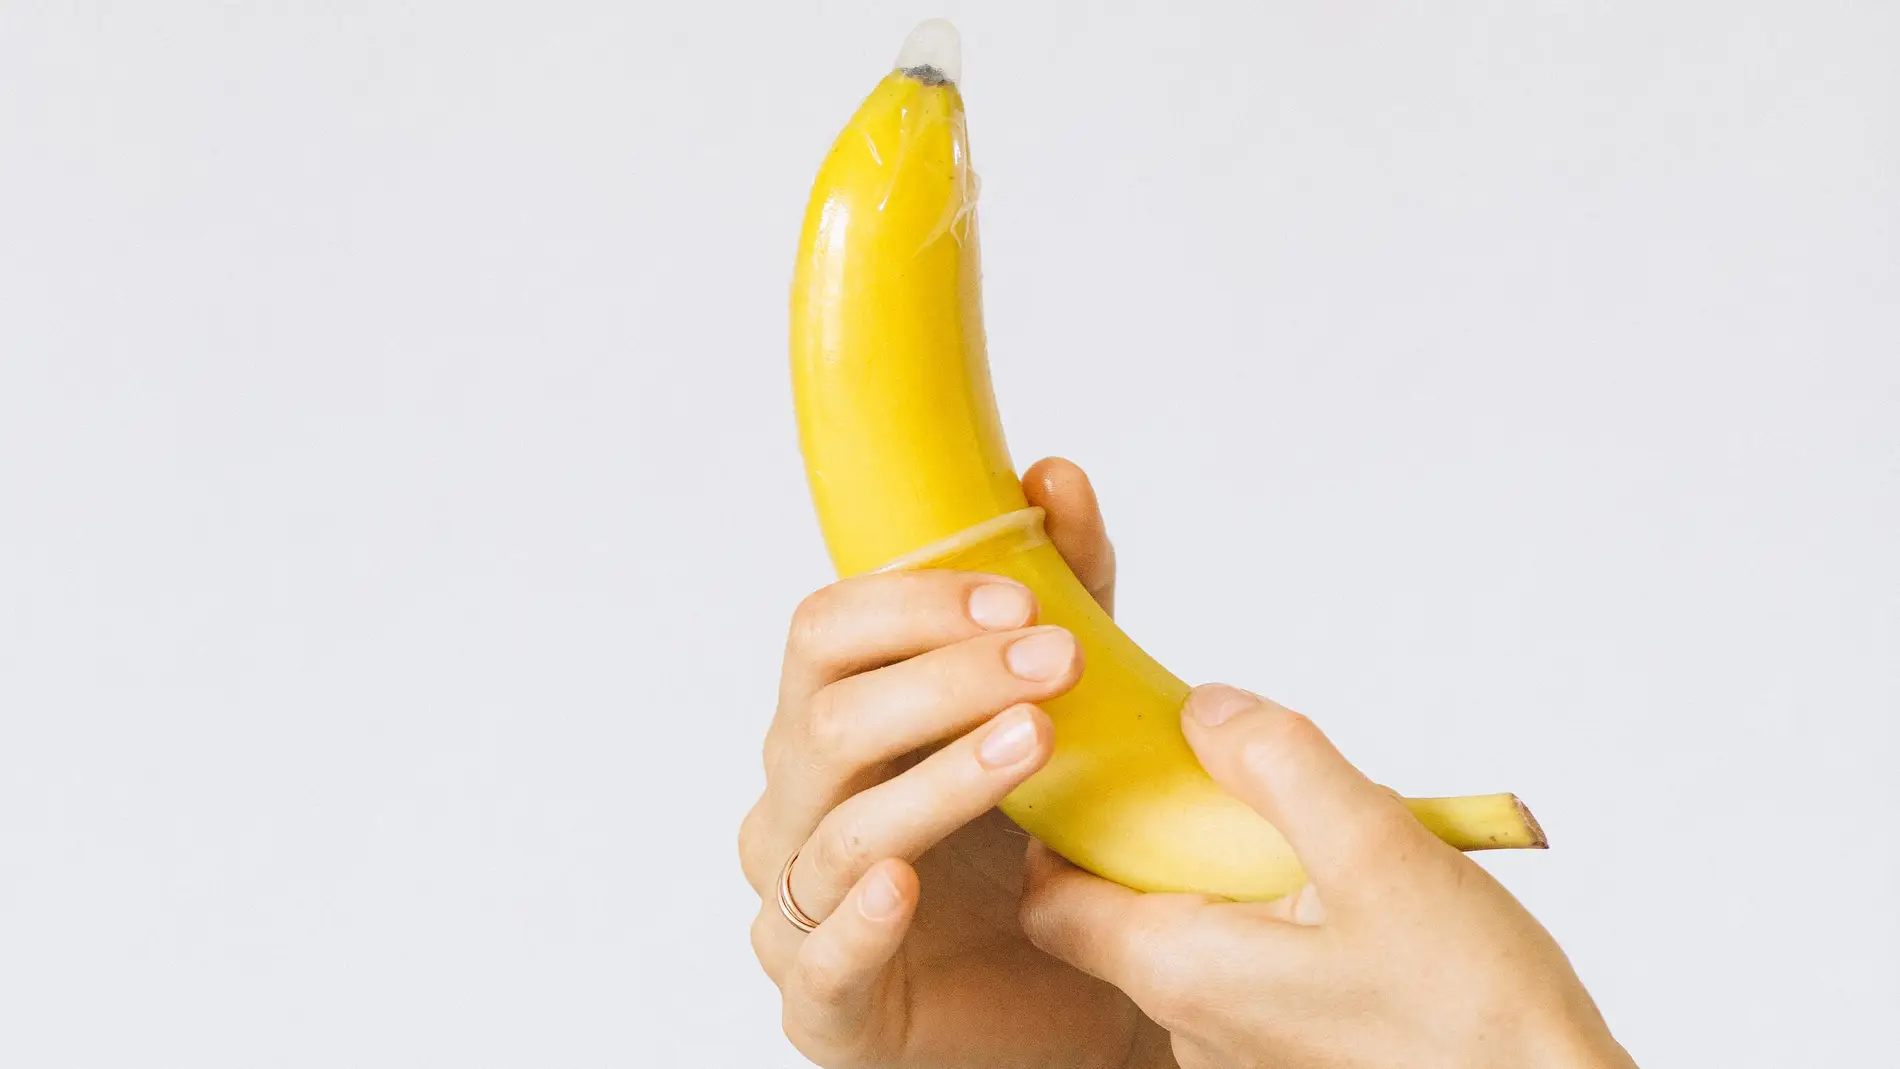 Colocación de un preservativo en un plátano